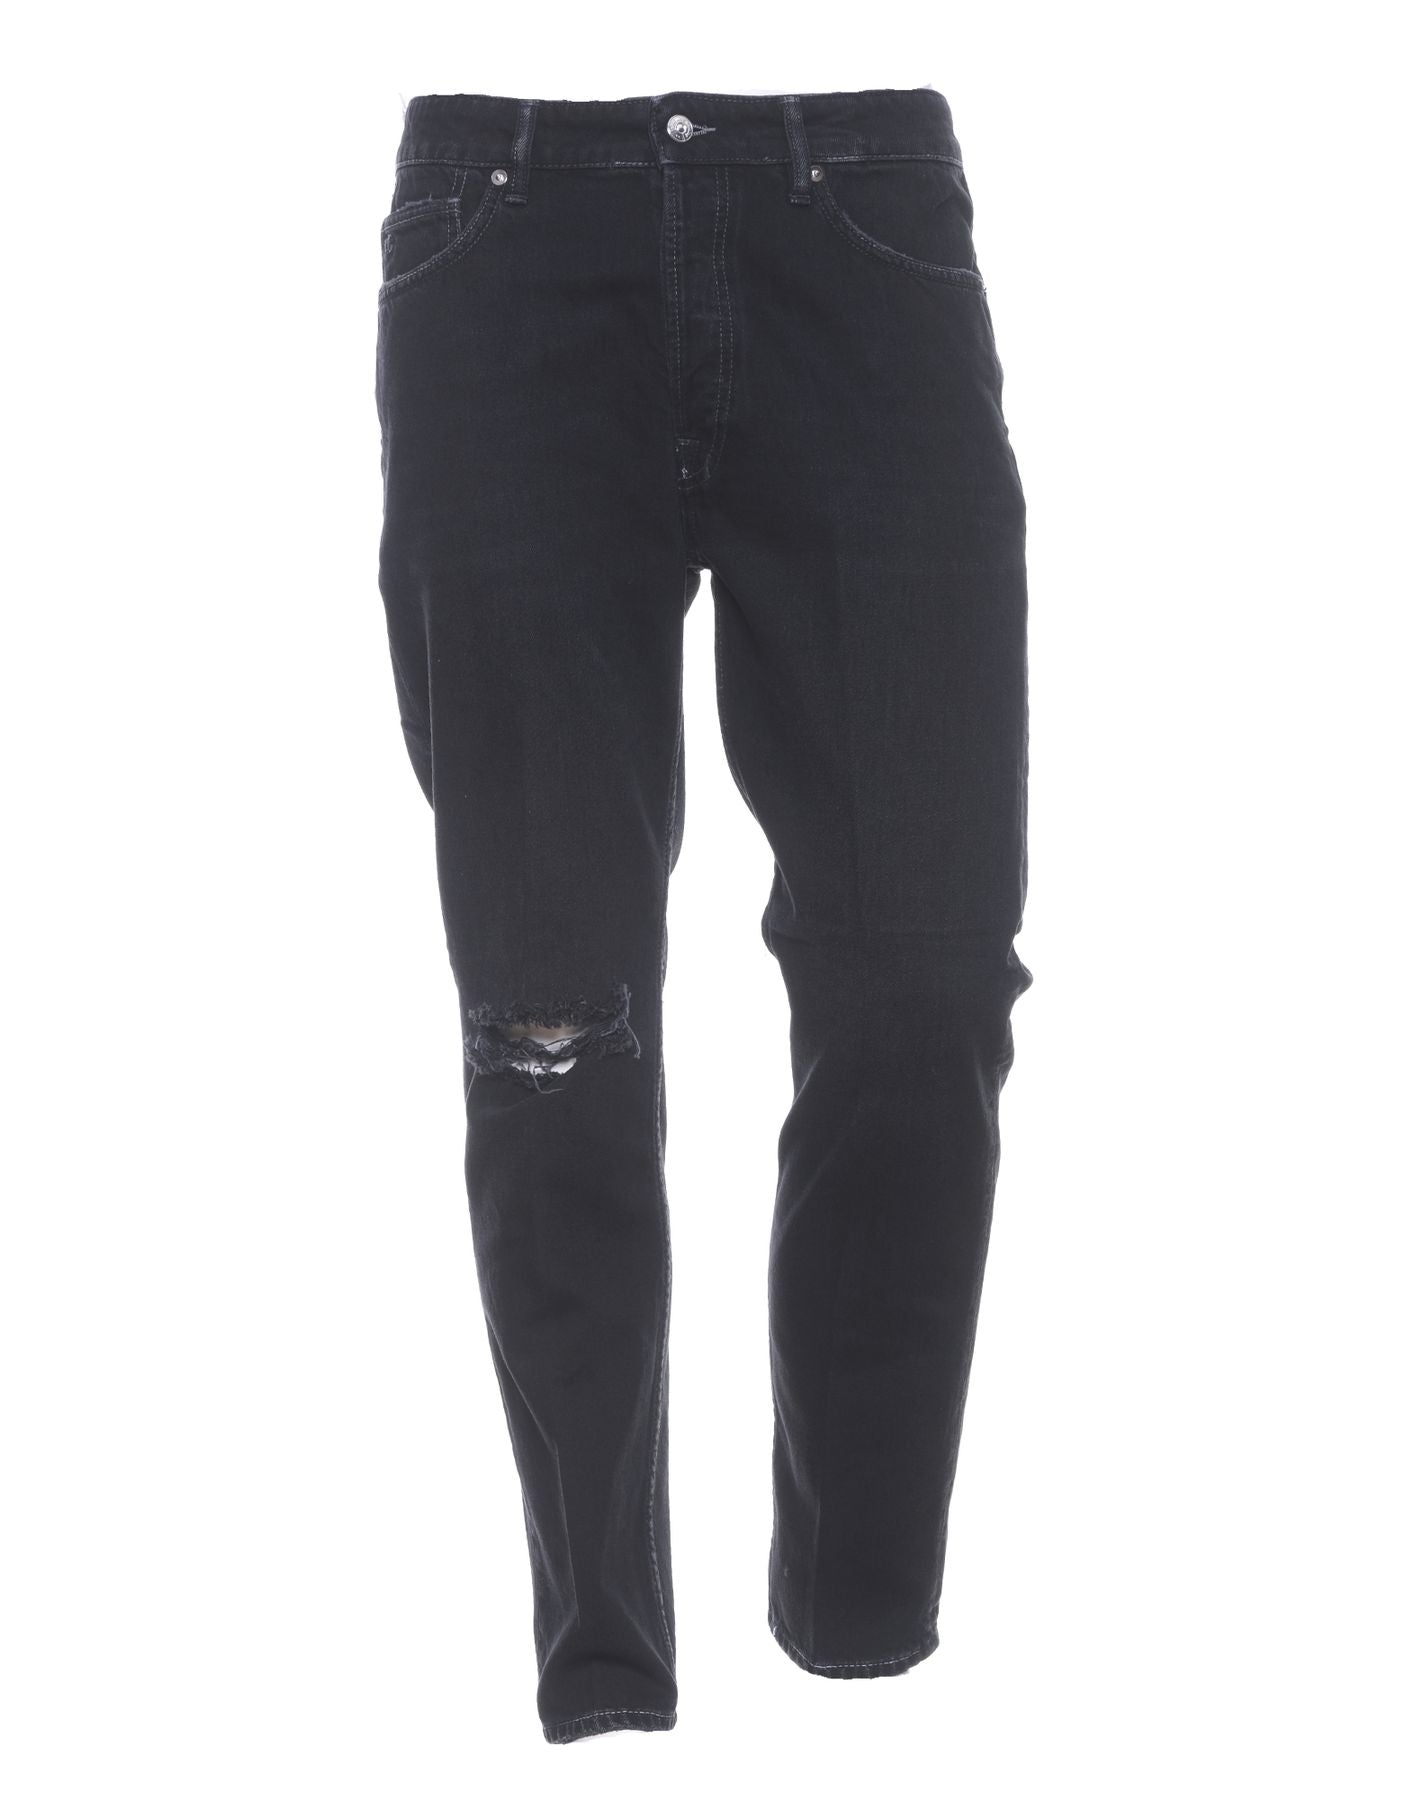 Buy PURE GRADE Men's Black Casual Nero Trouser at Amazon.in